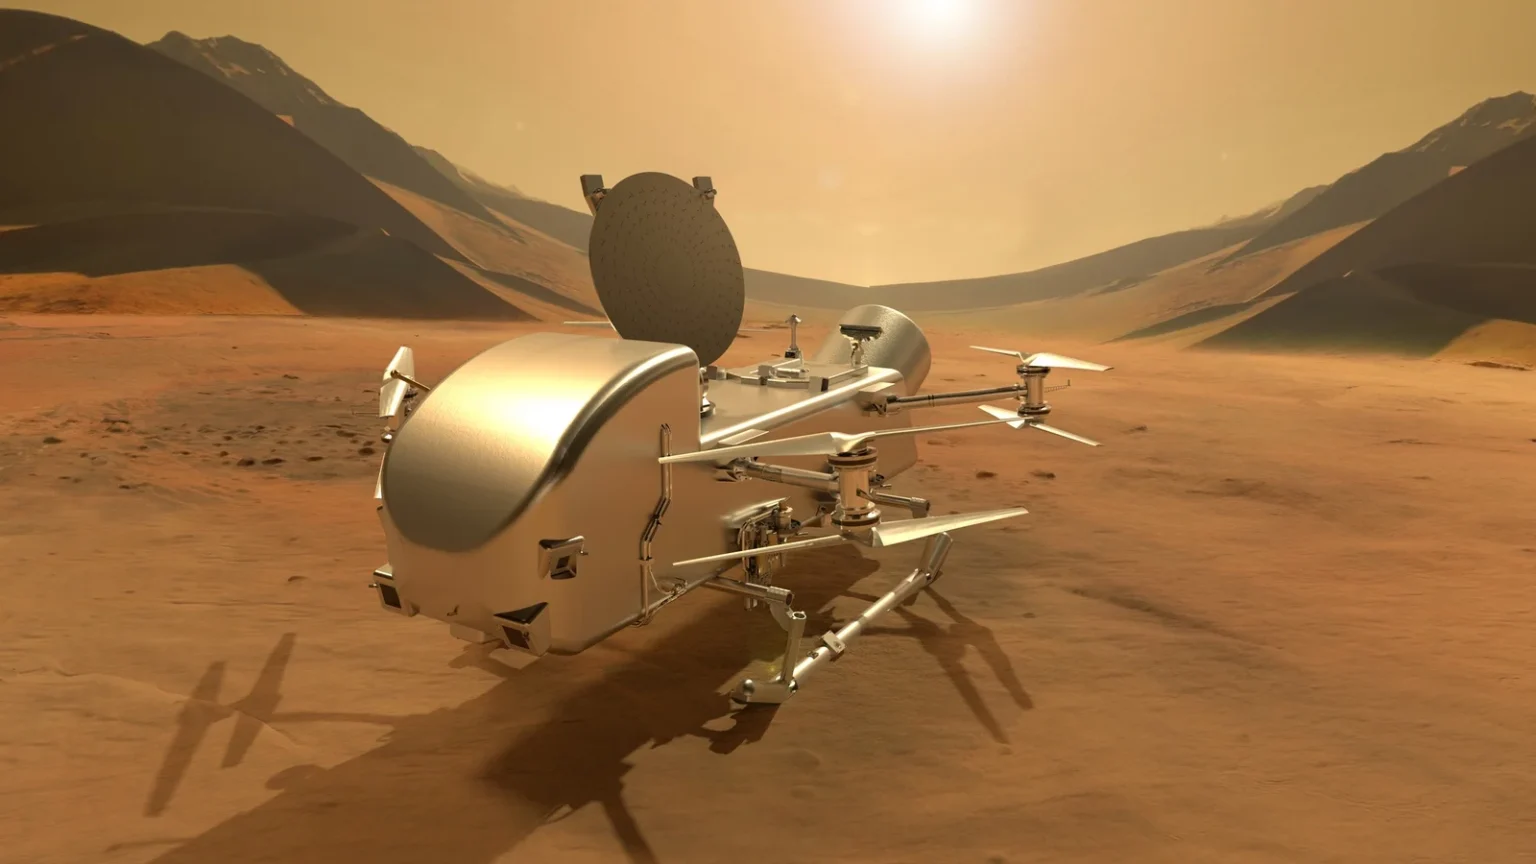 Desafios Orçamentários Adiam Missão Dragonfly da NASA a Titã